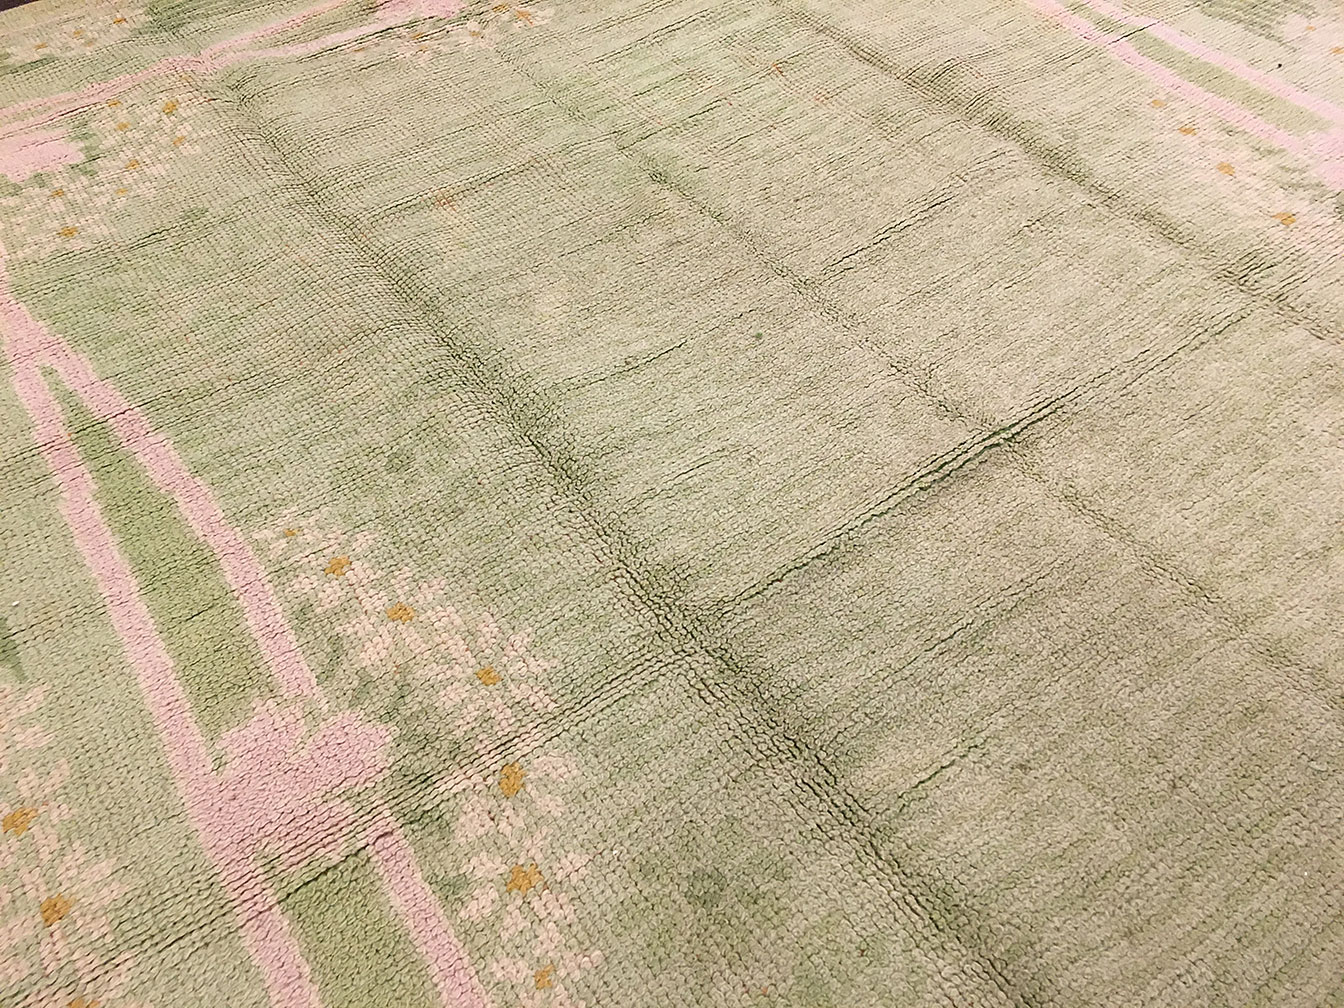 Antique donegal Carpet - # 52943